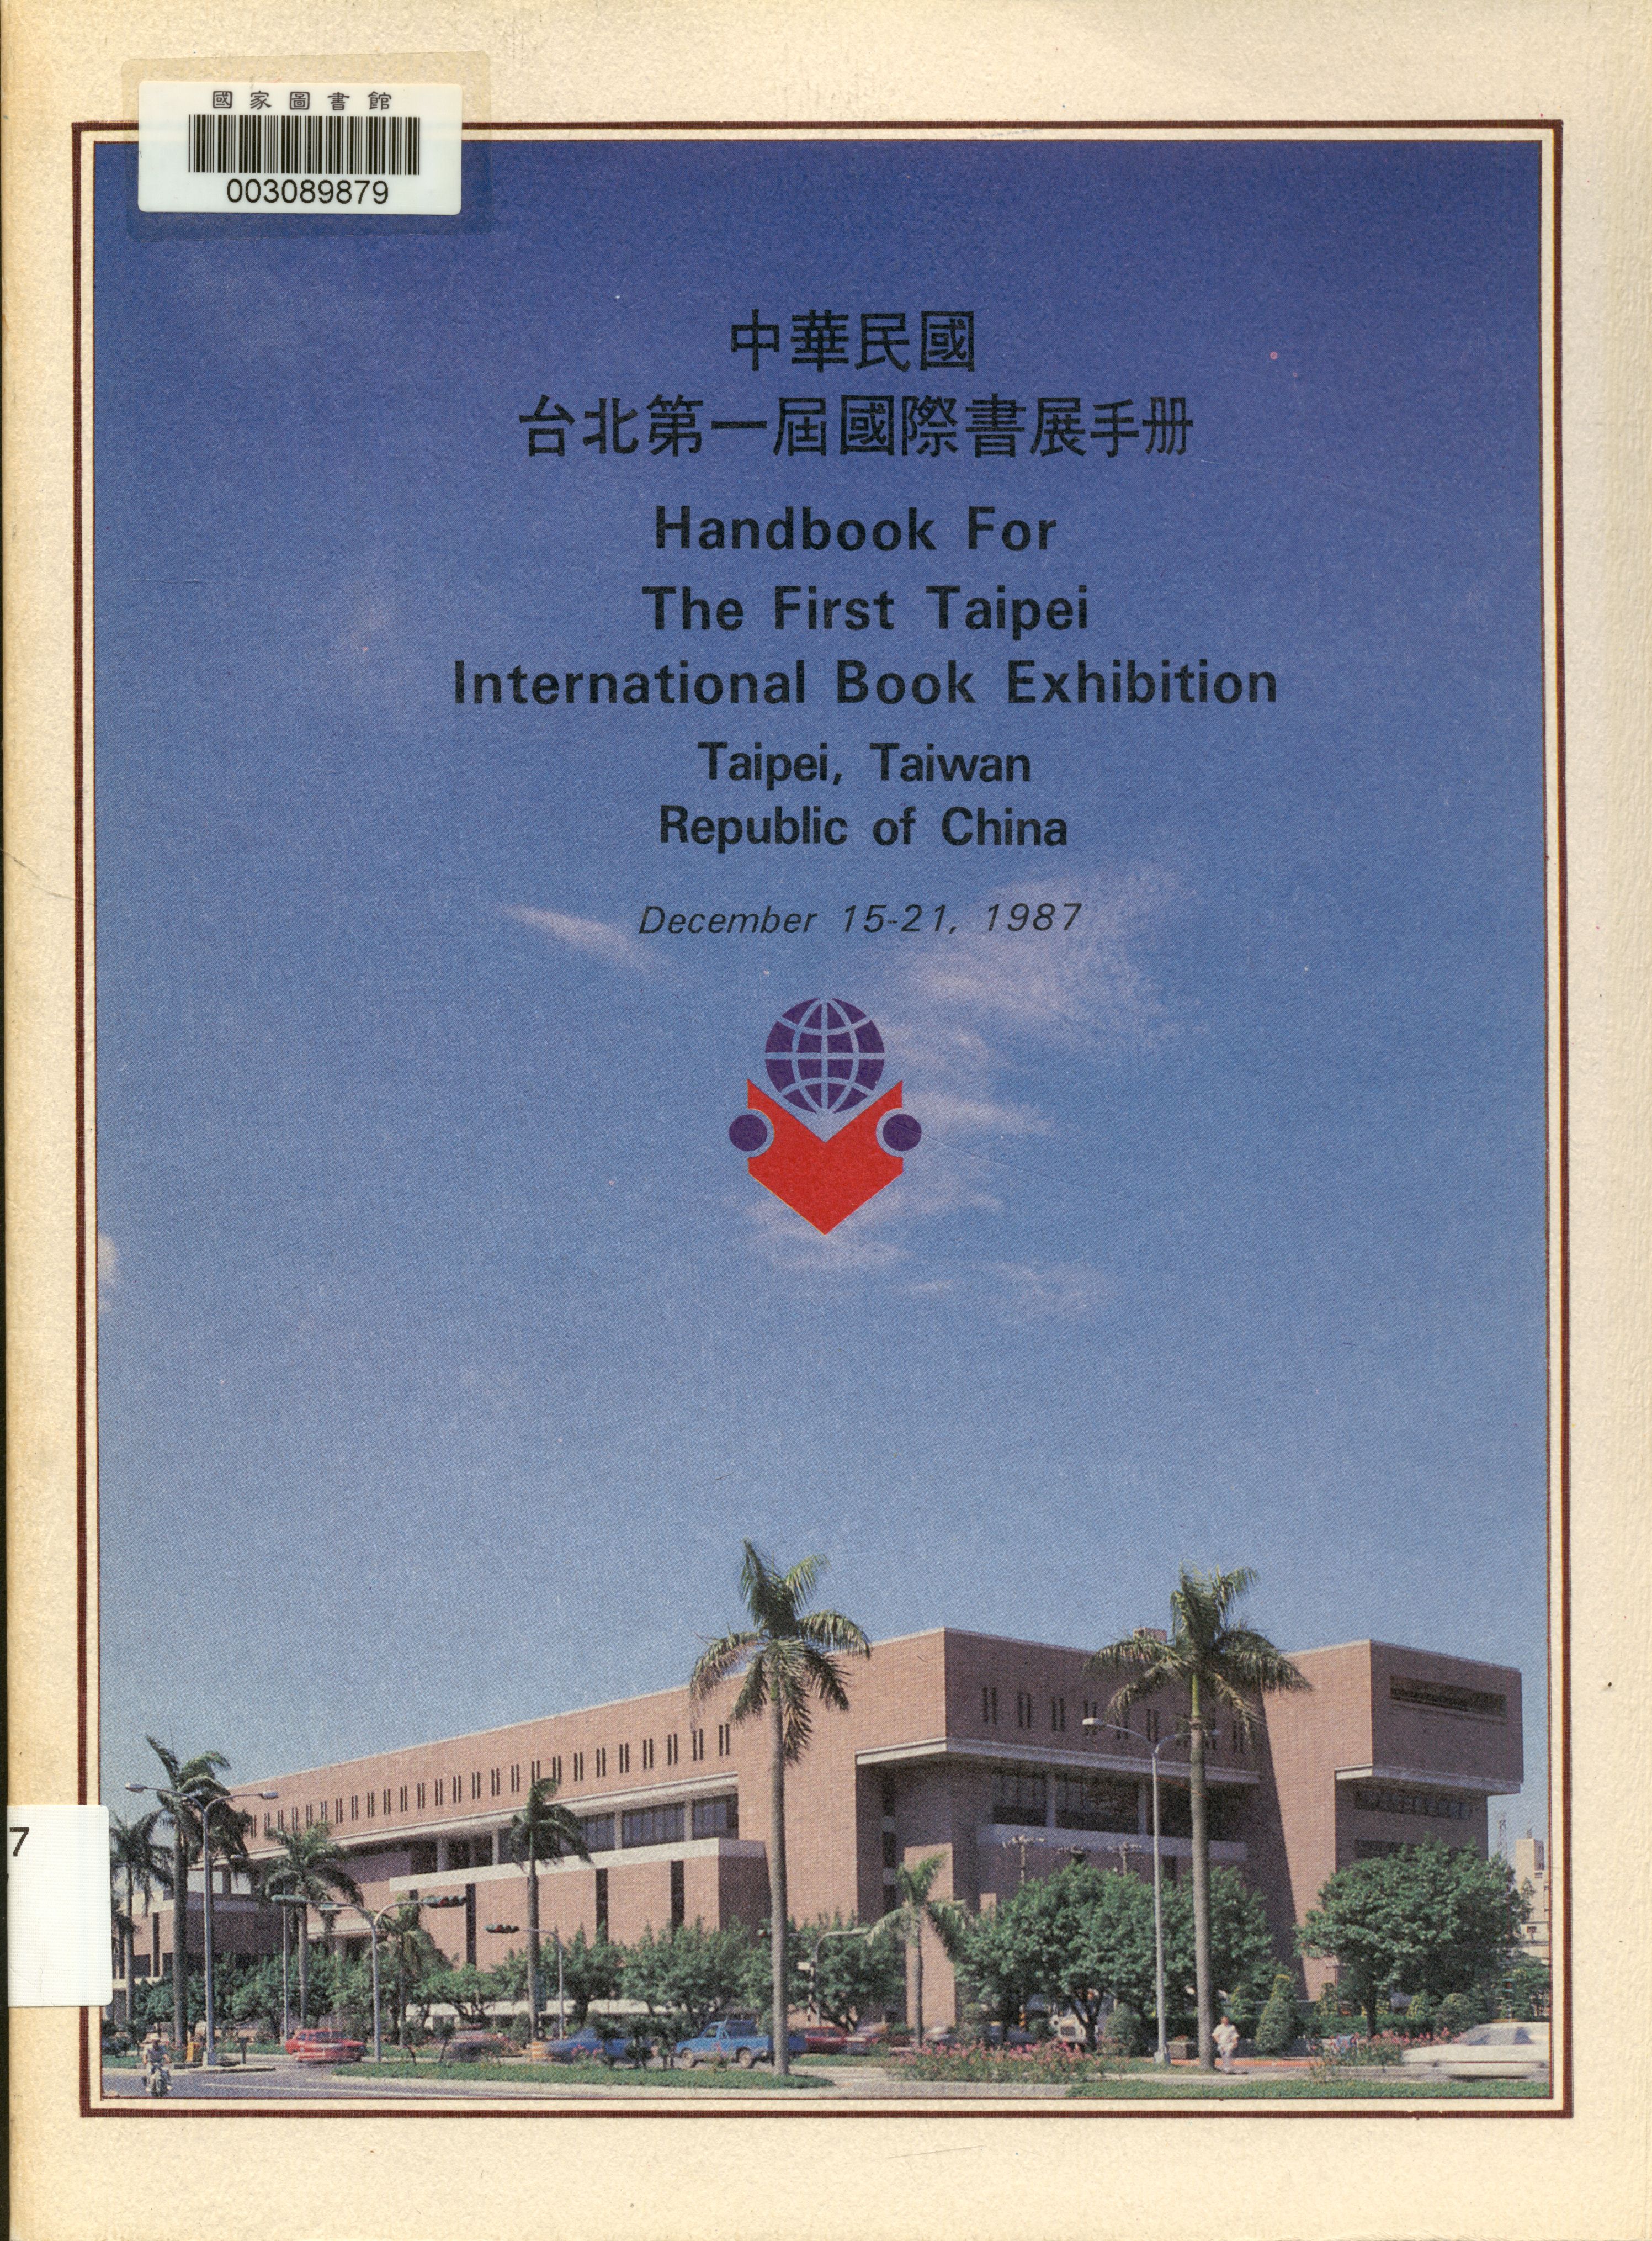 中華民國台北第一屆國際書展手冊